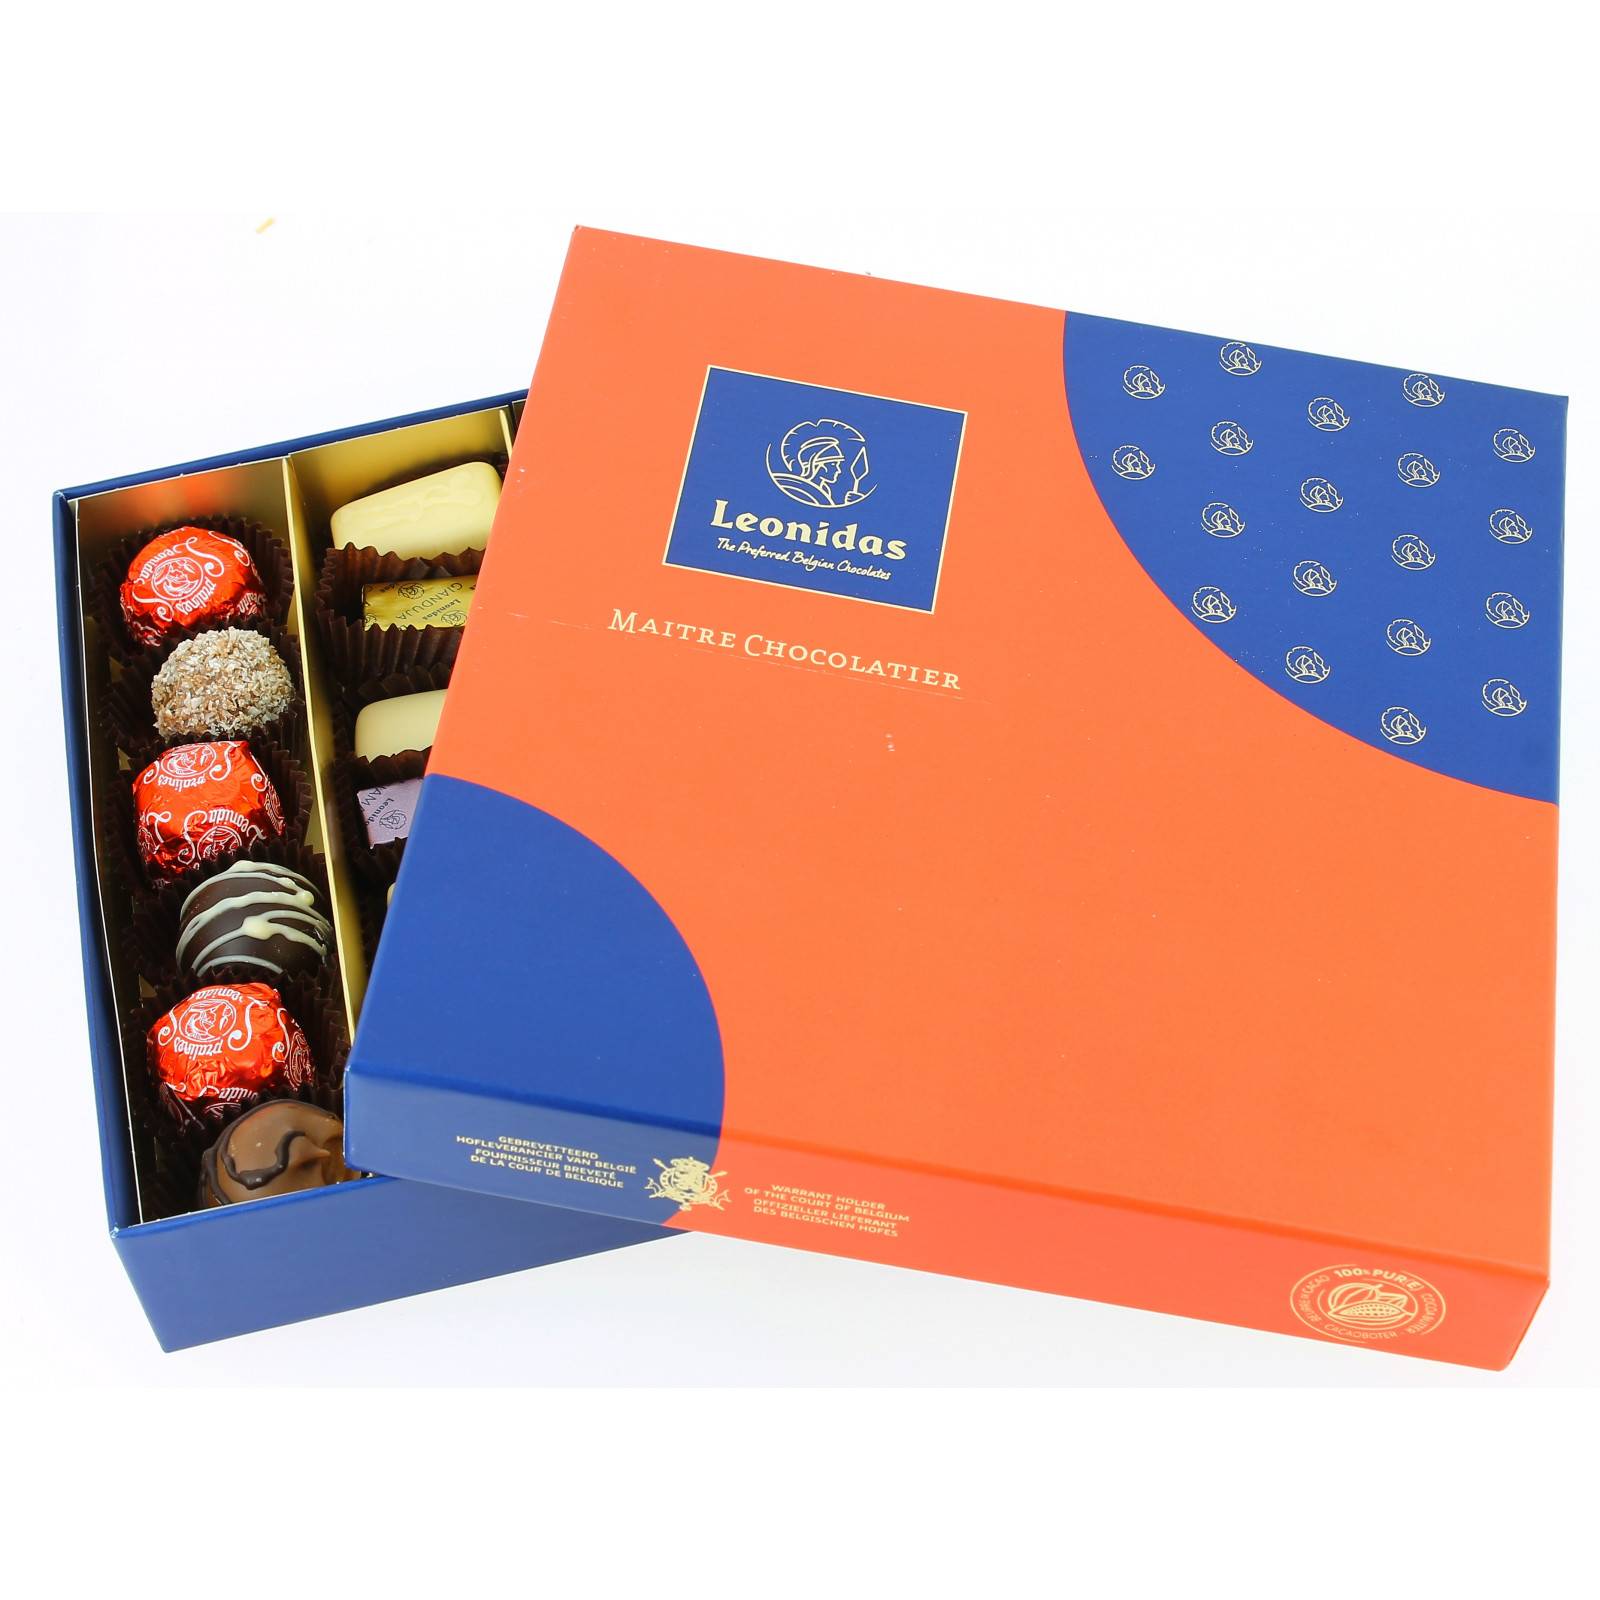 Boite carrée de chocolats Leonidas - Collection France - 350g